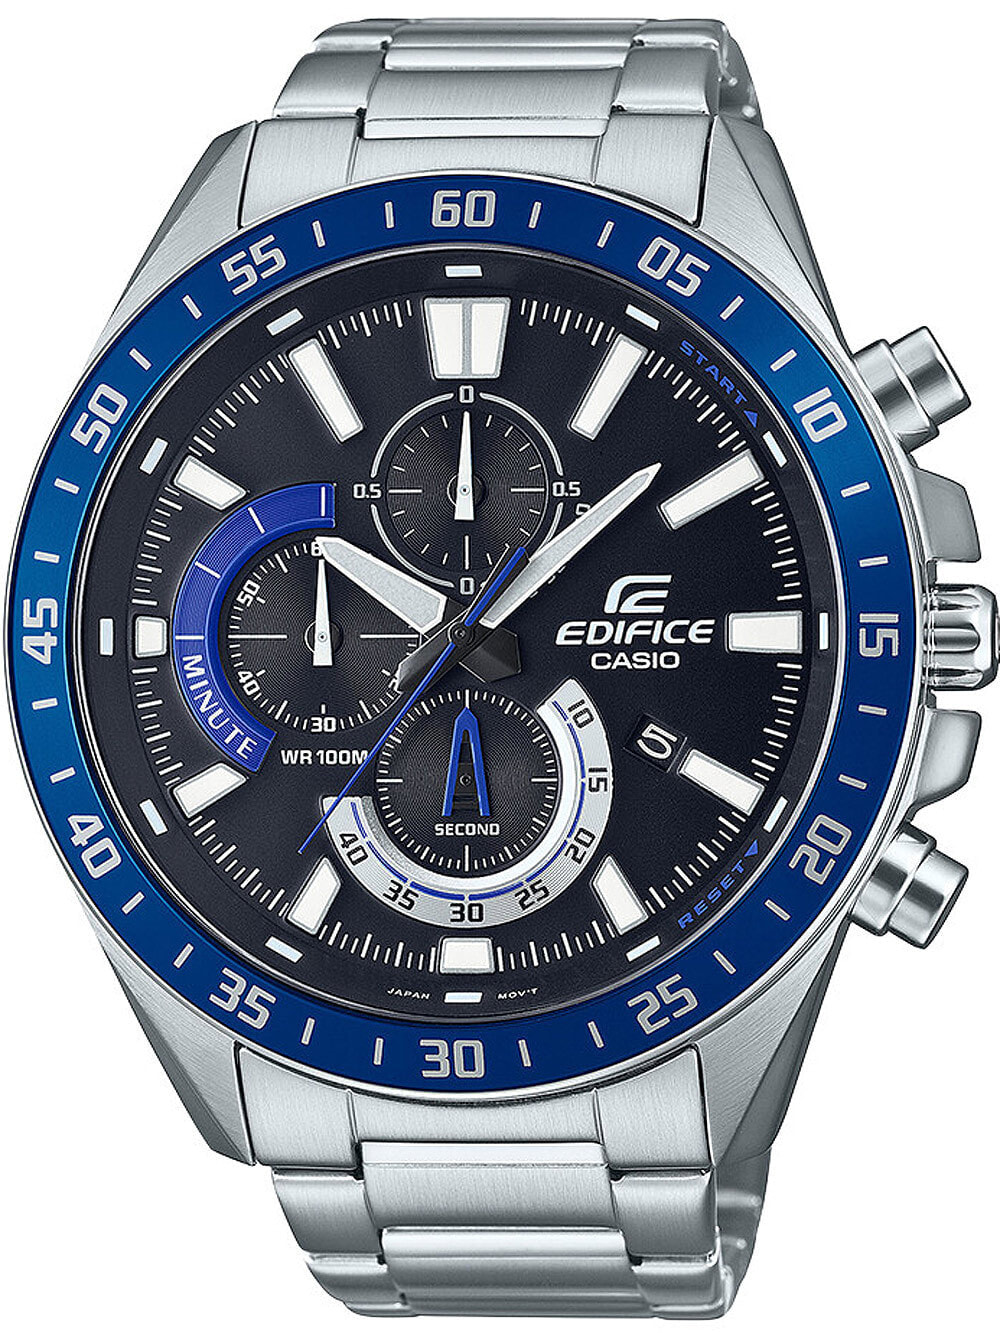 Мужские наручные часы с серебряным браслетом Casio EFV-620D-1A2VUEF Edifice Herren 49mm 10ATM